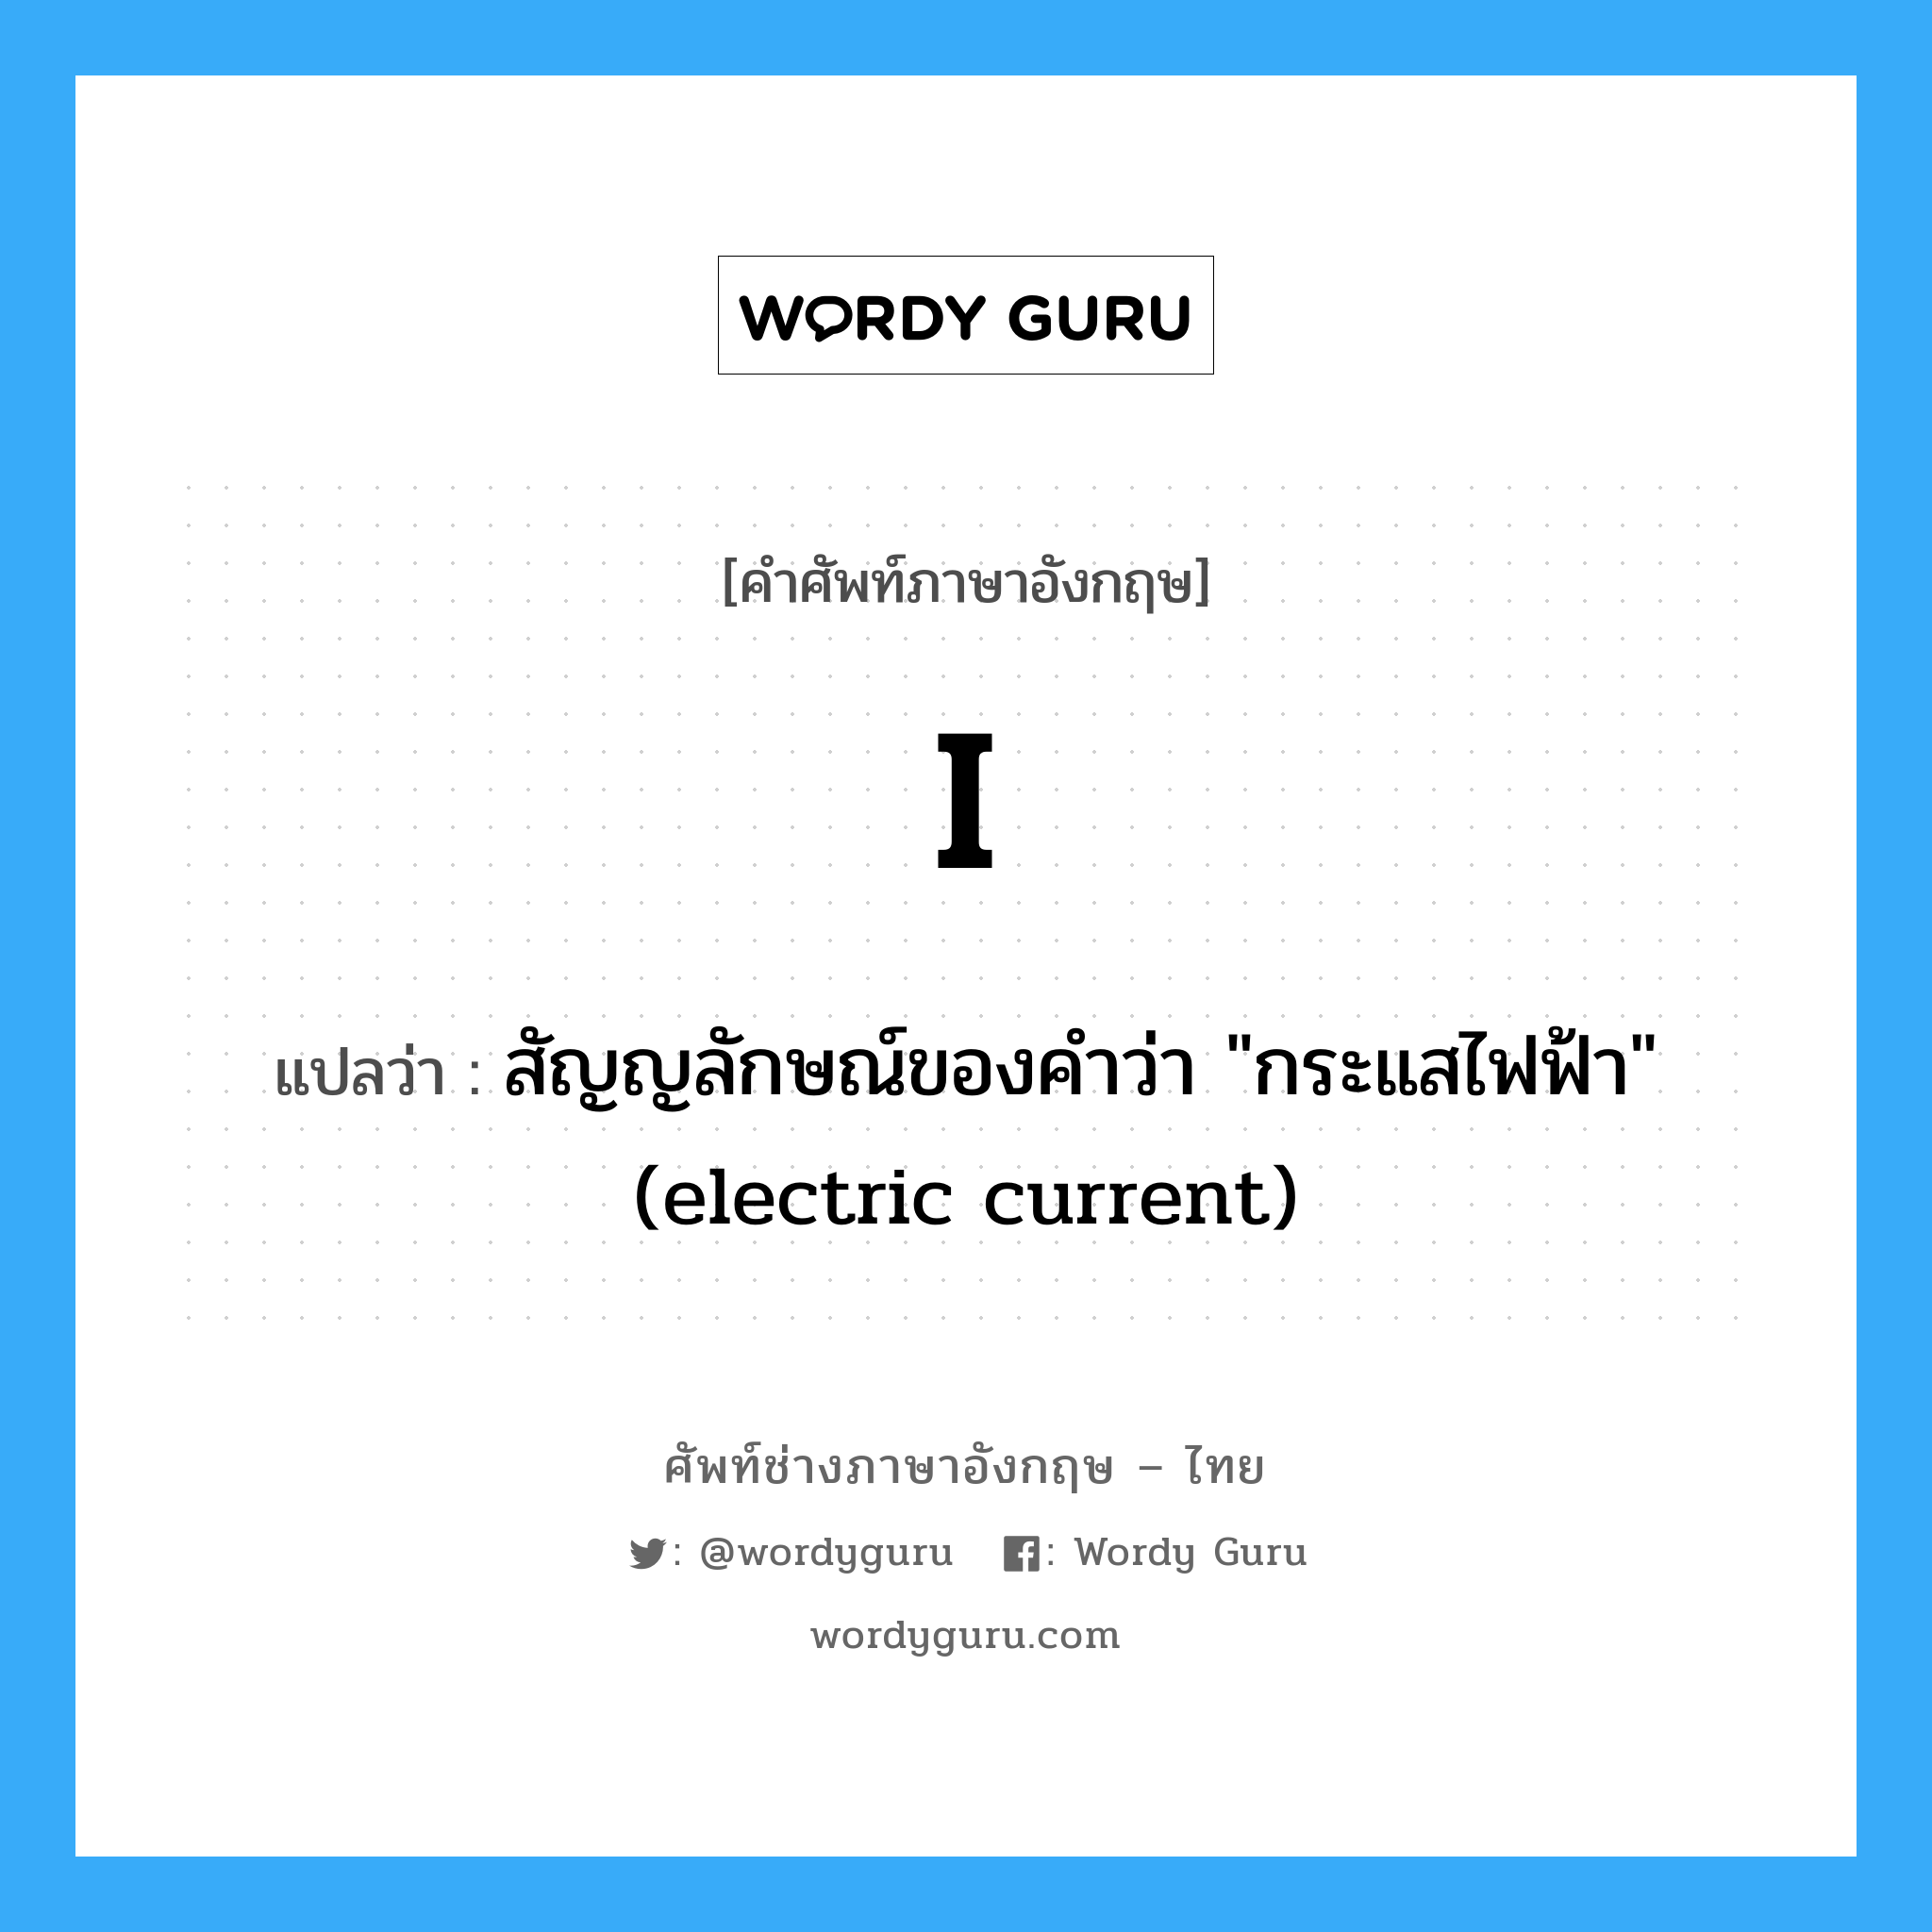 สัญญลักษณ์ของคำว่า "กระแสไฟฟ้า" (electric current) ภาษาอังกฤษ?, คำศัพท์ช่างภาษาอังกฤษ - ไทย สัญญลักษณ์ของคำว่า "กระแสไฟฟ้า" (electric current) คำศัพท์ภาษาอังกฤษ สัญญลักษณ์ของคำว่า "กระแสไฟฟ้า" (electric current) แปลว่า I